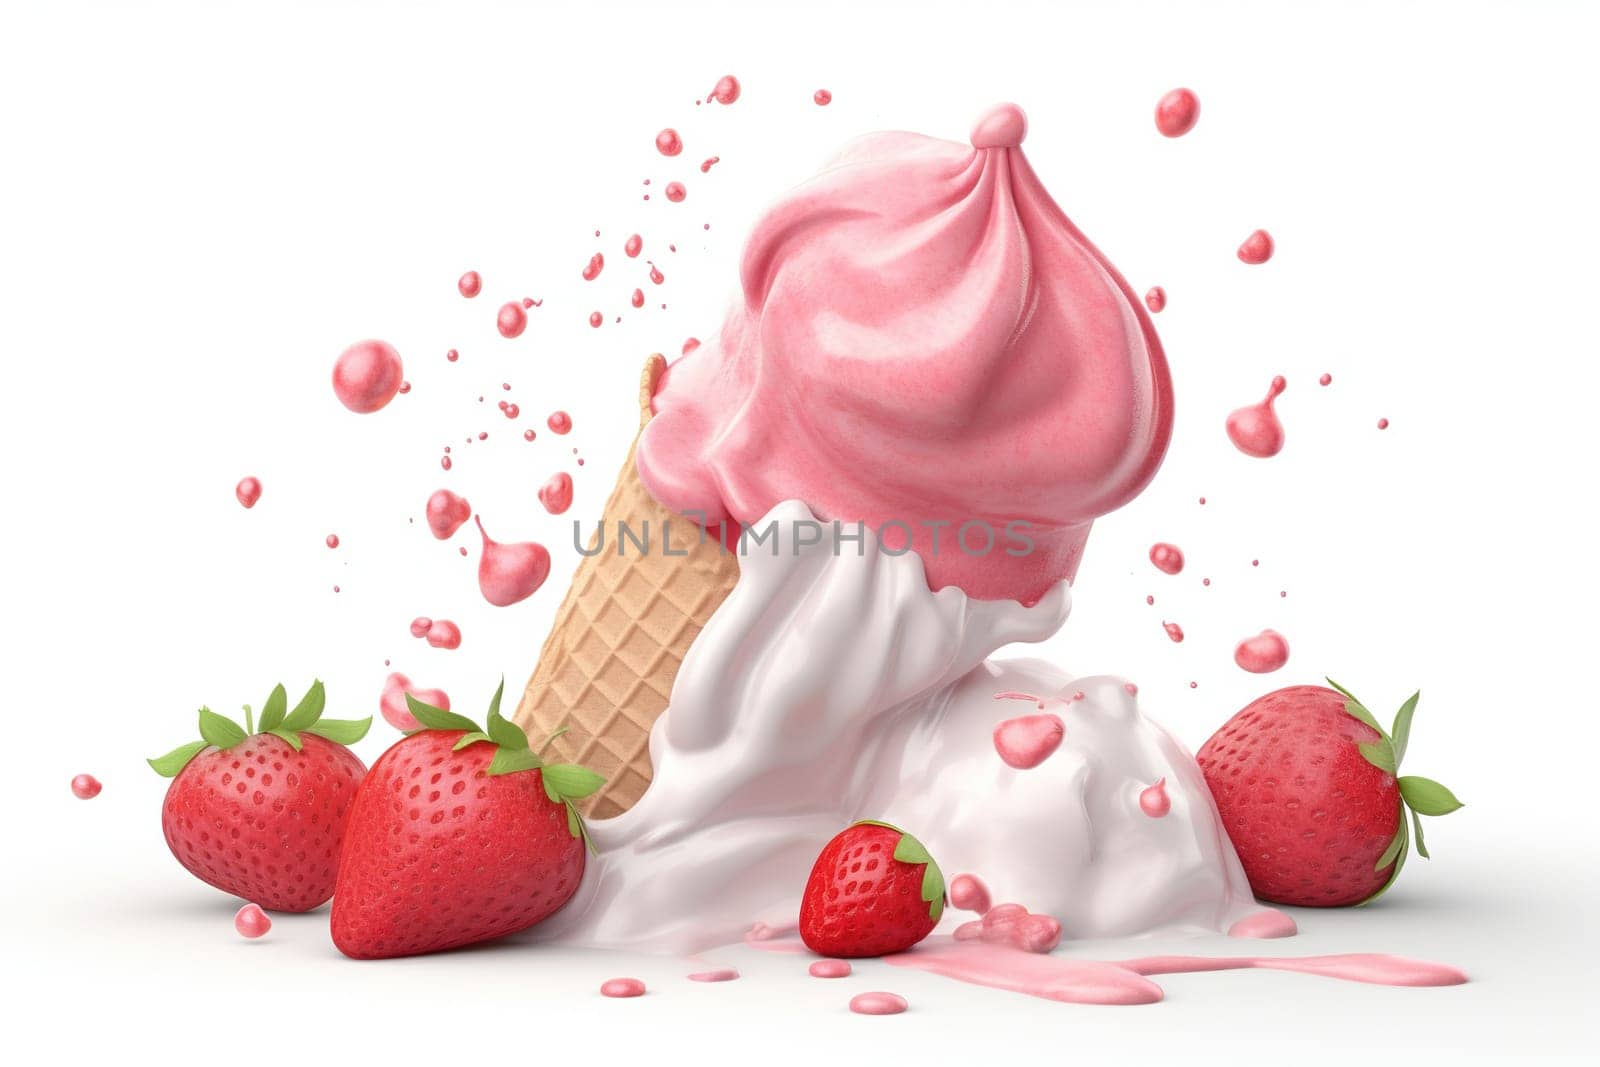 Ice cream with strawberries by GekaSkr